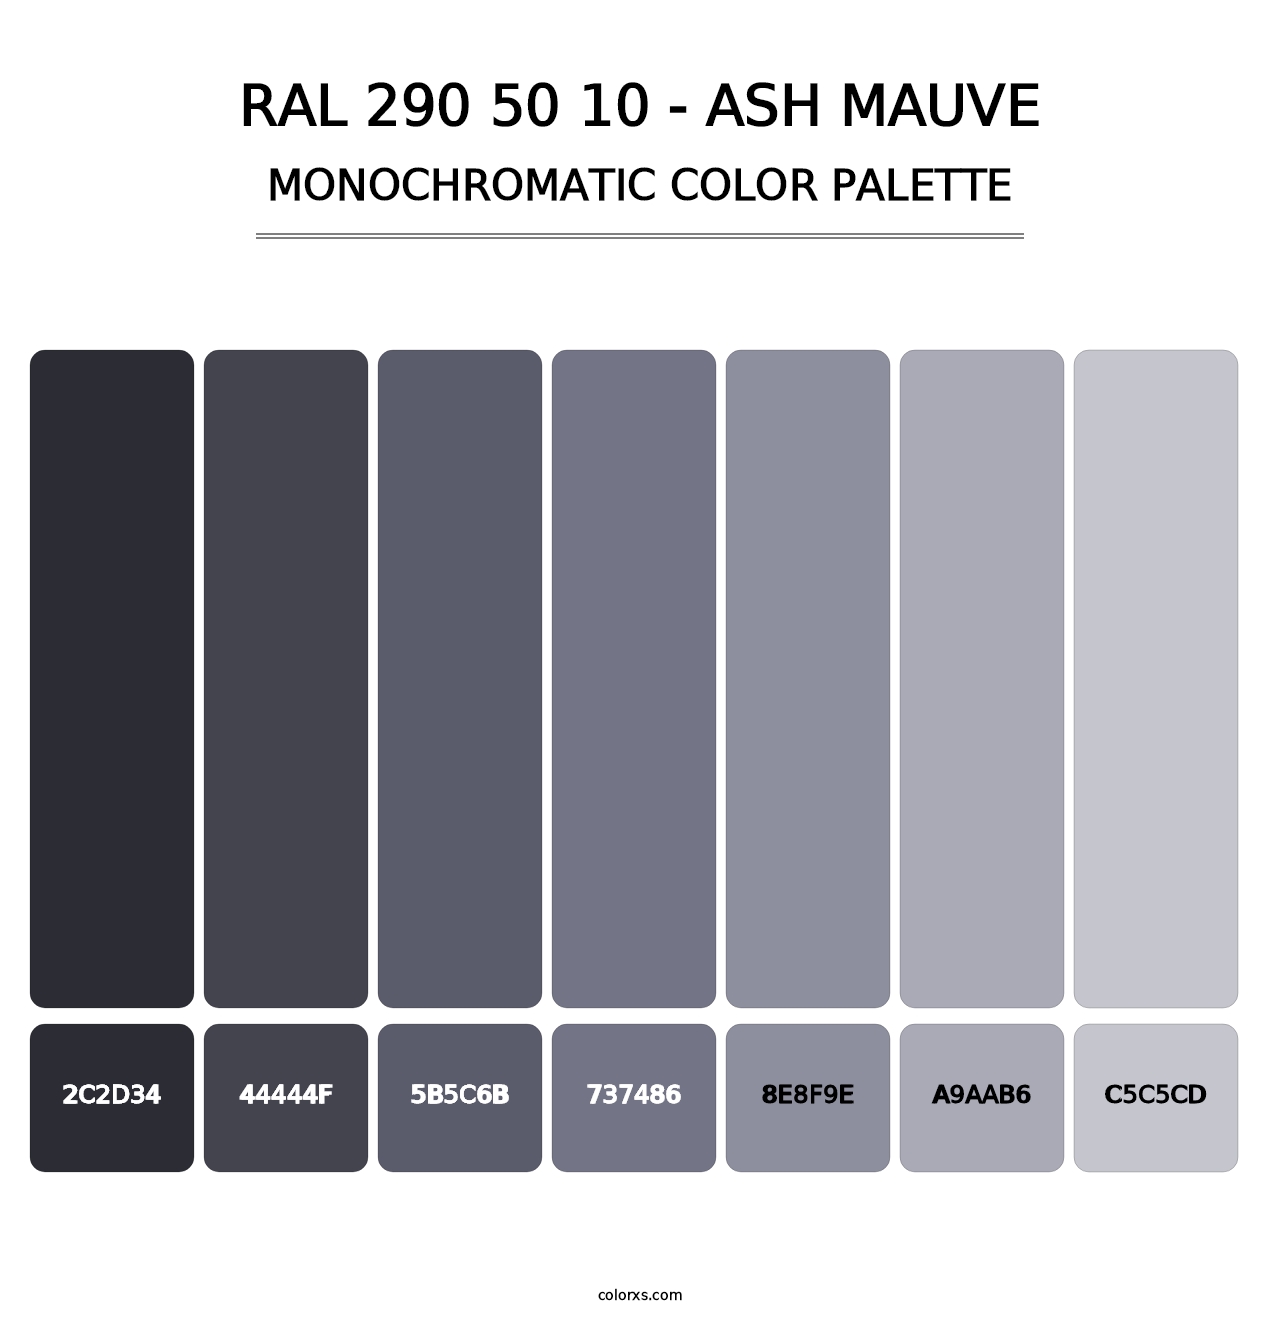 RAL 290 50 10 - Ash Mauve - Monochromatic Color Palette